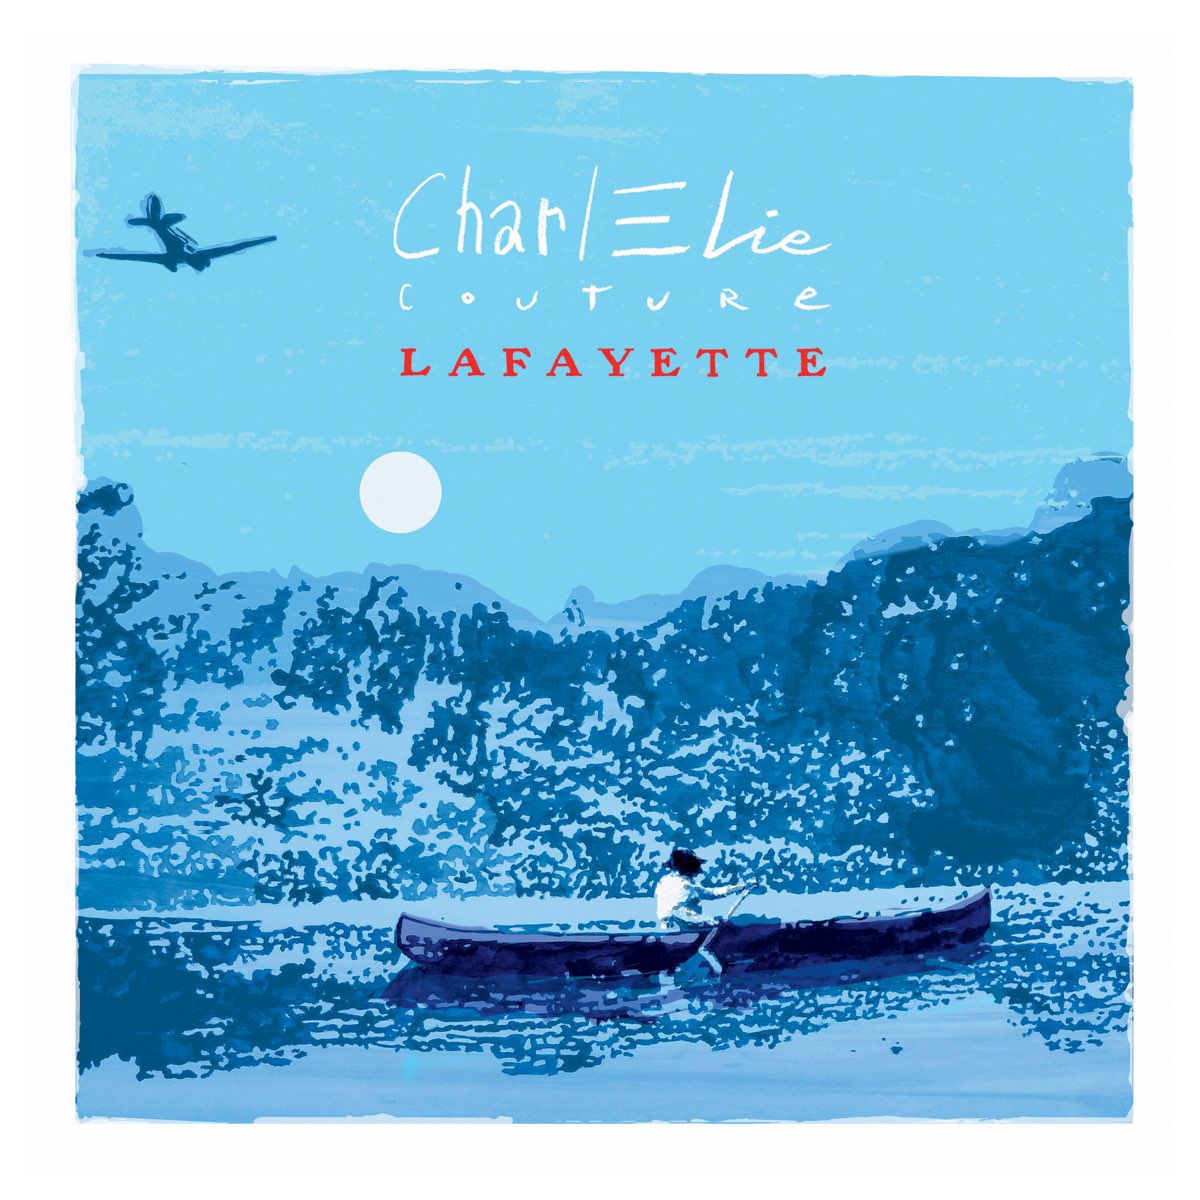 Lafayette” álbum de CharlElie Couture en Apple Music